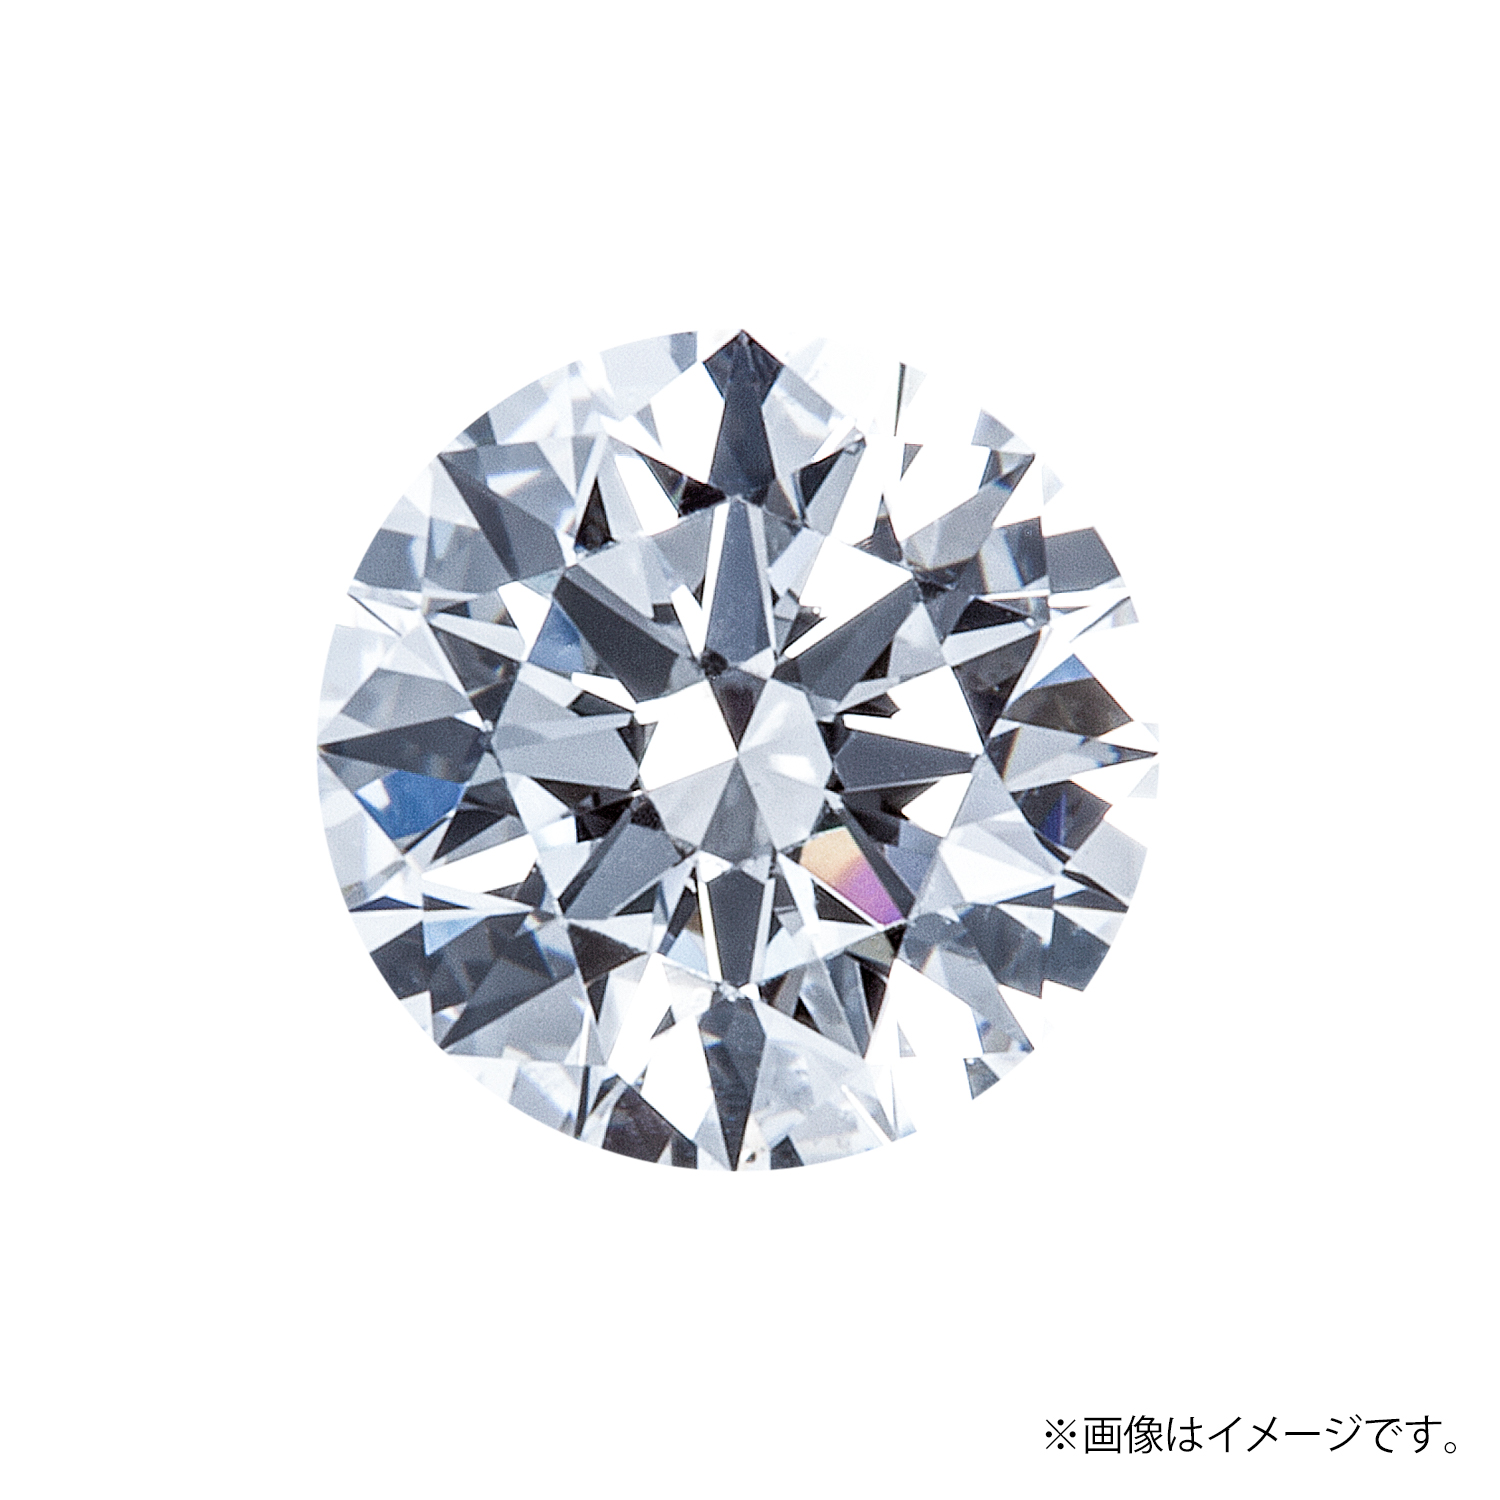 0.257ct Round ダイヤモンド / F / VS2 / 3EX H&C